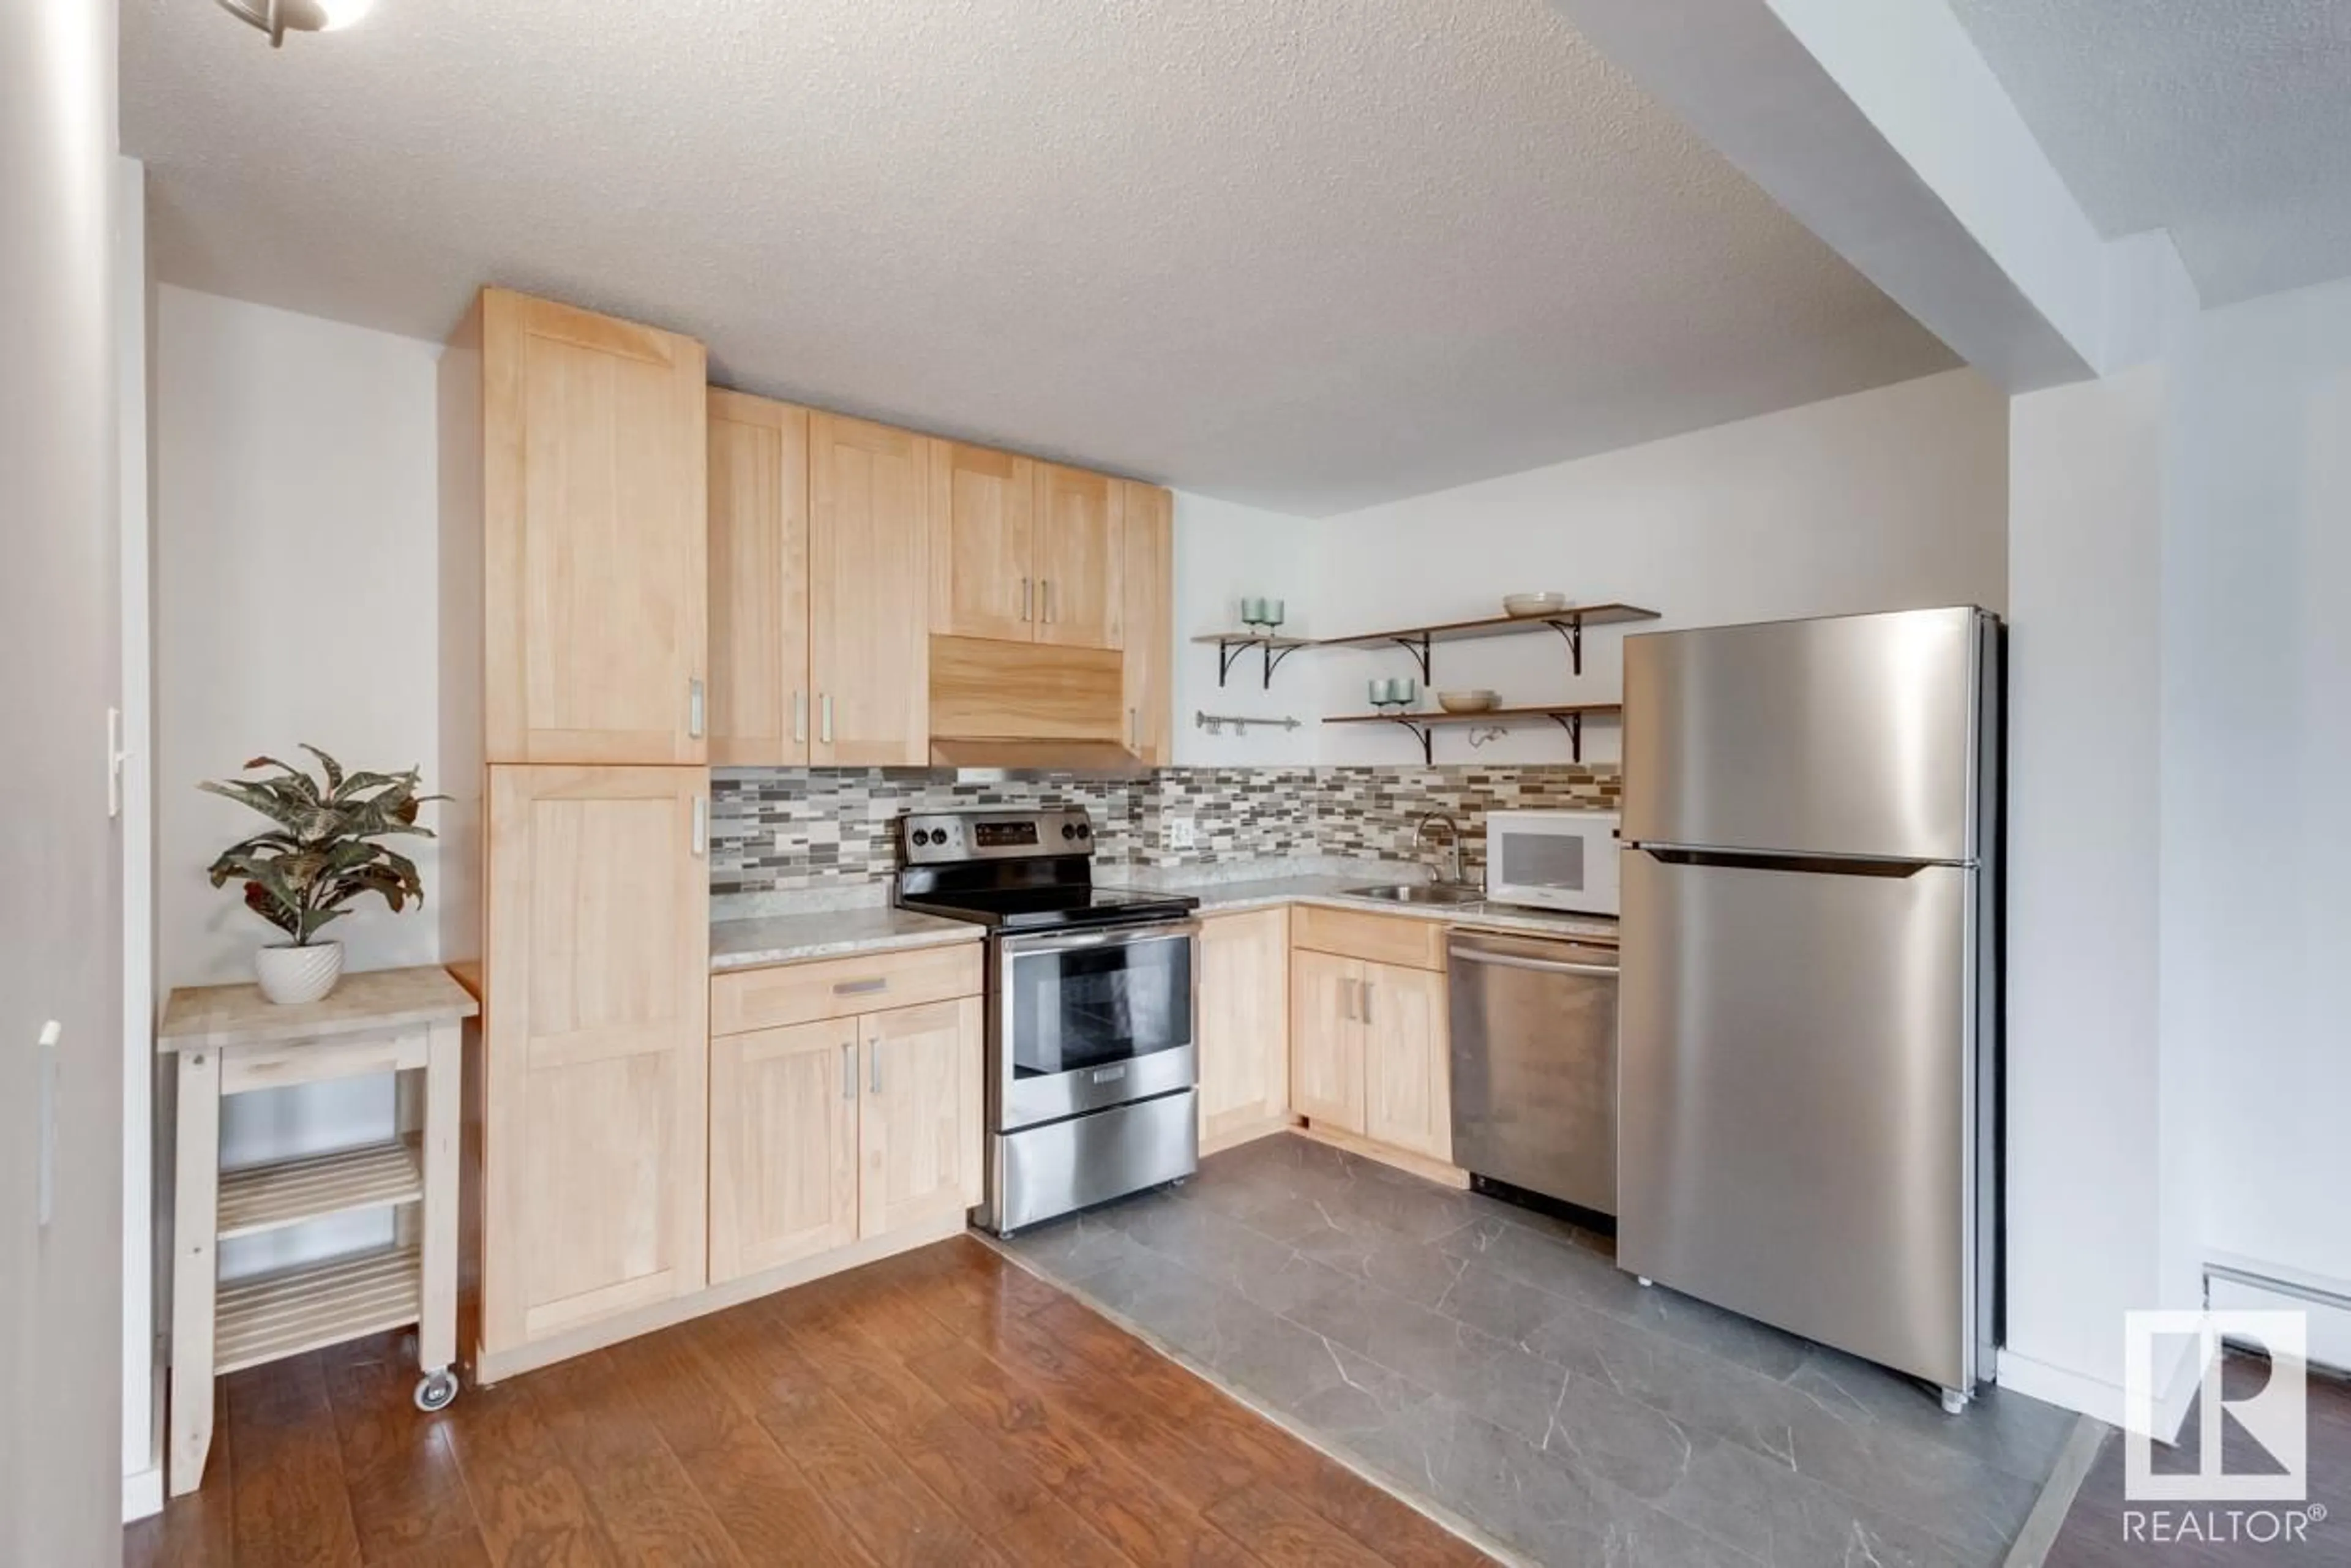 Standard kitchen for #210 8604 GATEWAY BV NW, Edmonton Alberta T6E4B6